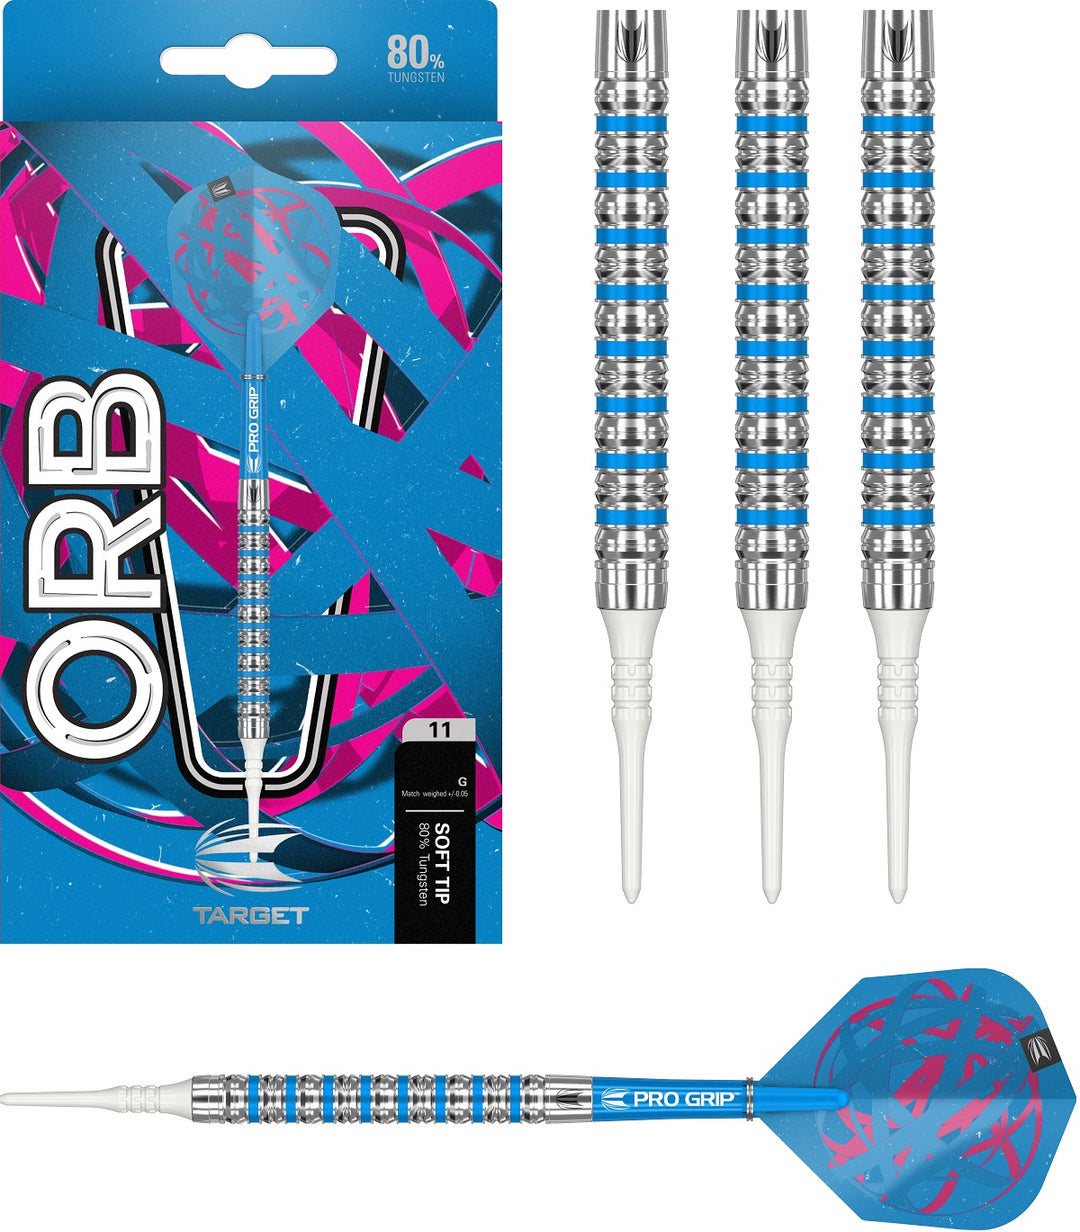 Orb 11 80% Tungsten Soft Tip Darts By Target